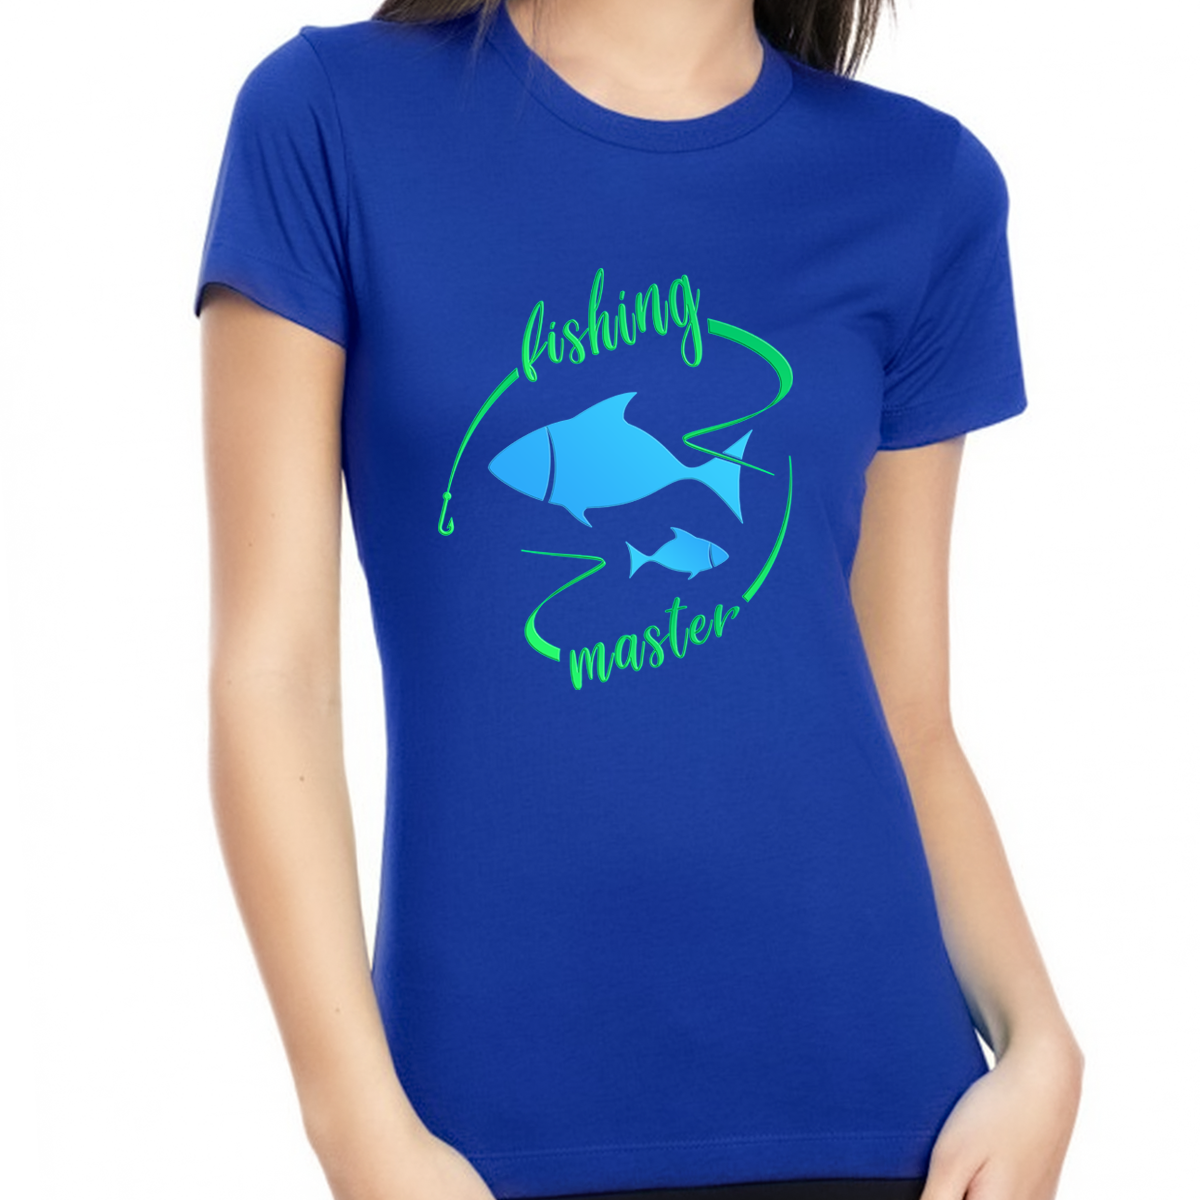 Fishing Shirt - Fishing Shirts for Women - Womens Fishing Shirts - Fishing Master T-Shirt - Fishing Gift Shirt